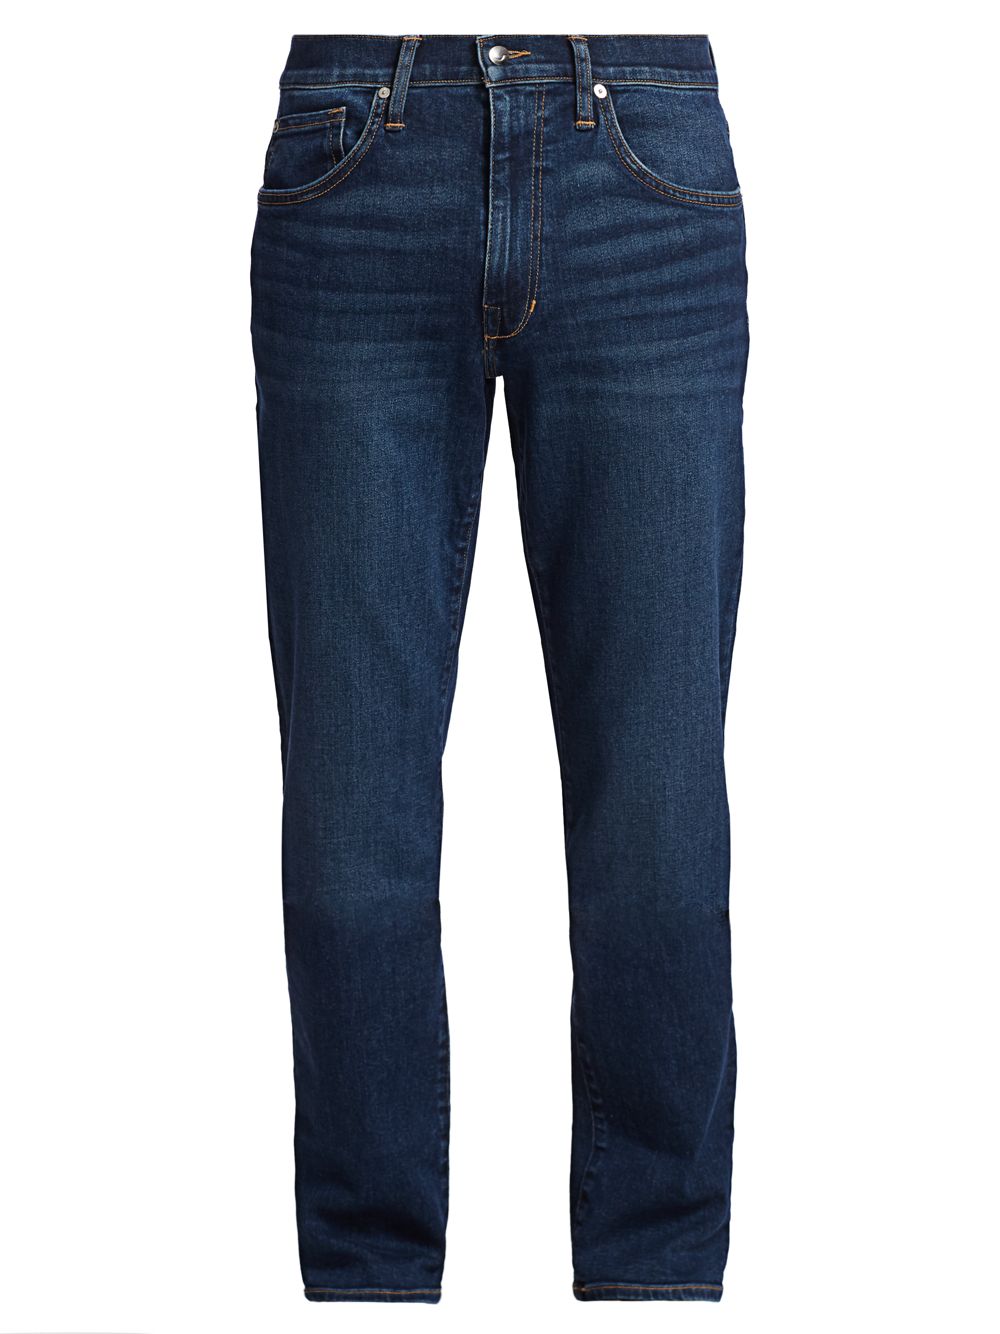 Узкие прямые джинсы Brixton Stretch Joe's Jeans